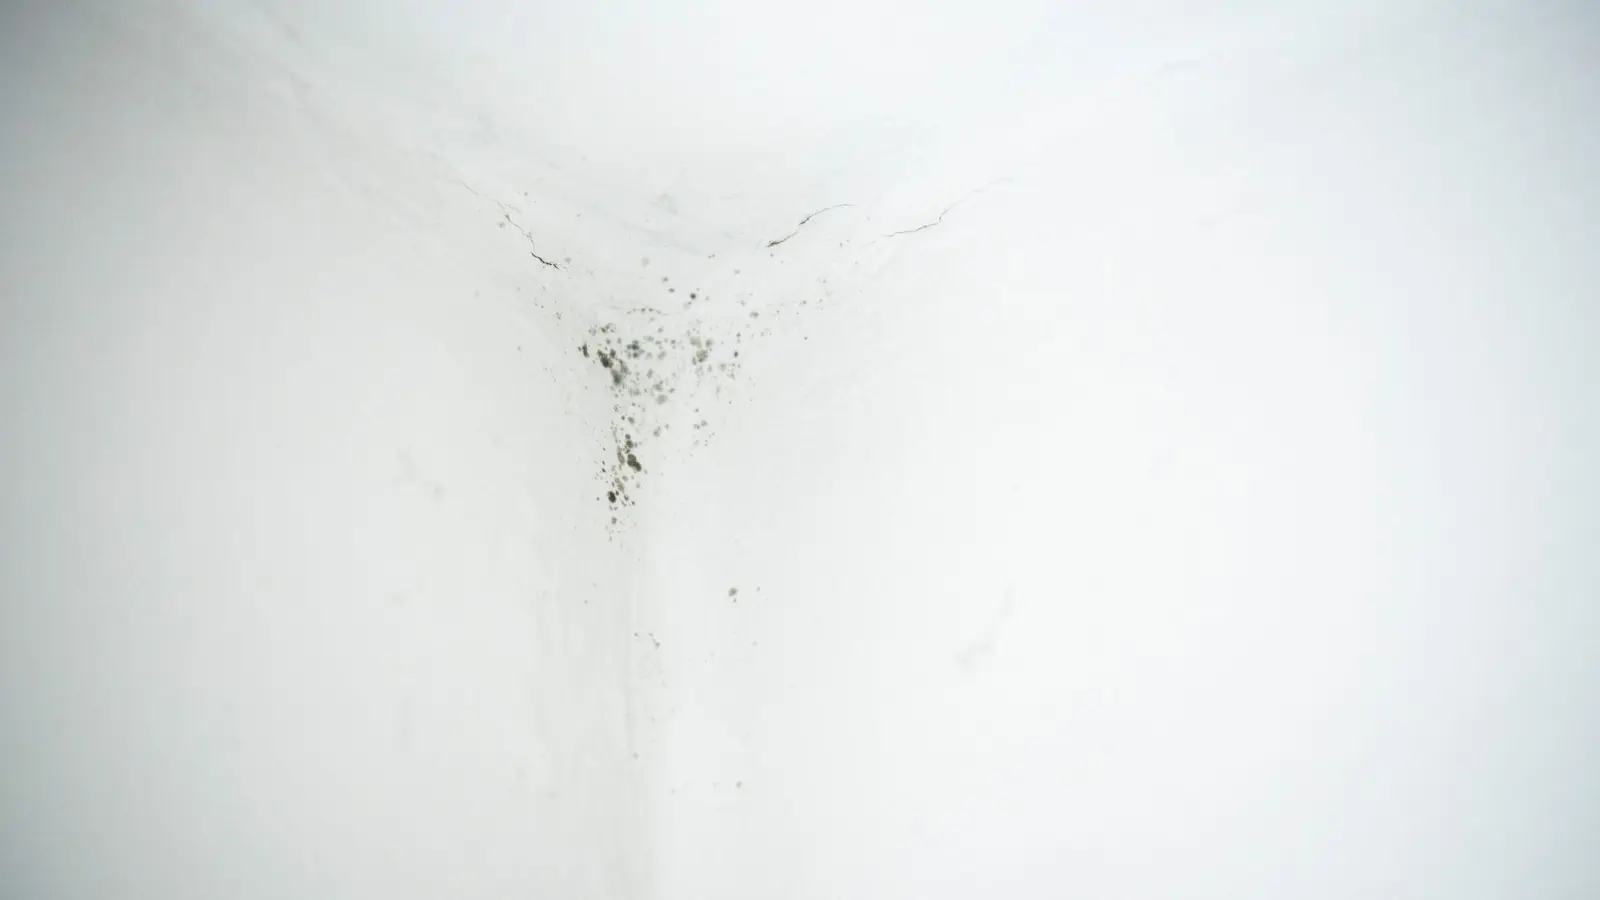 Keine Zeit verlieren: Die Ursachen für feuchte Stellen oder gar Schimmelspuren im Keller sollten möglichst schnell herausgefunden und beseitigt werden. (Foto: Catherine Waibel/dpa-tmn)